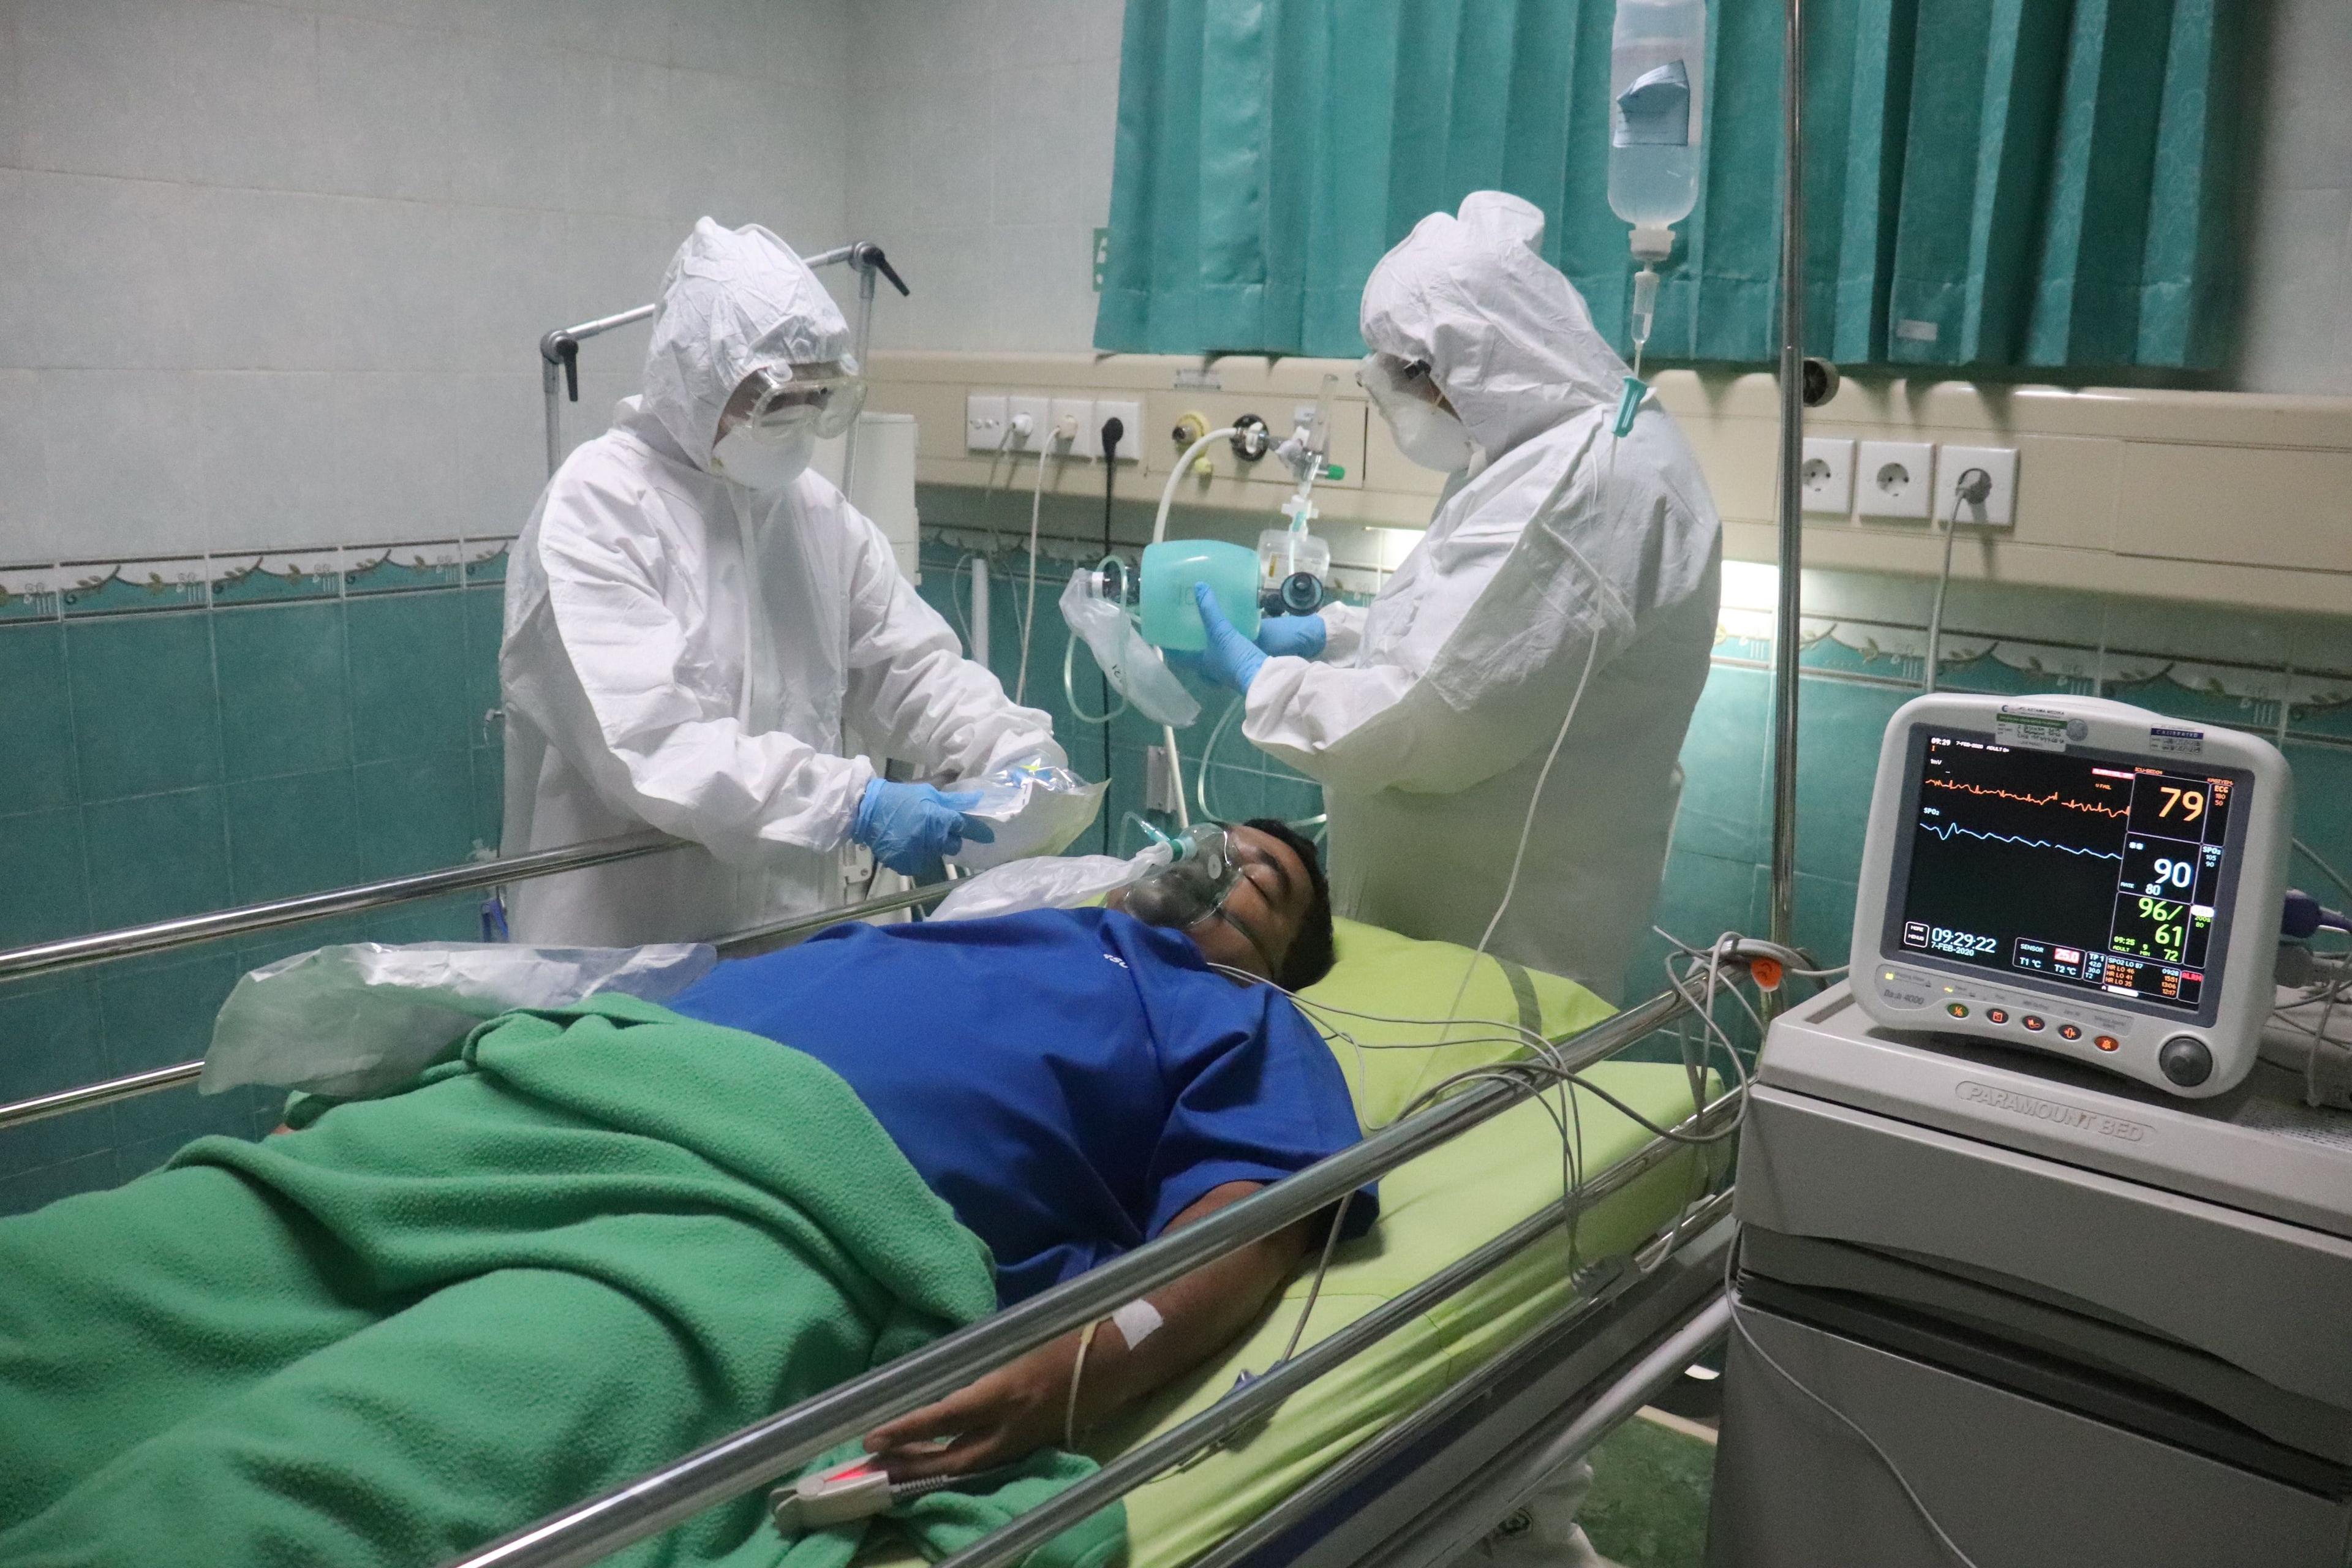 بیمار مبتلا به کووید روی تخت بیمارستان است و دو نفر از کادر درمان کنارش هستند